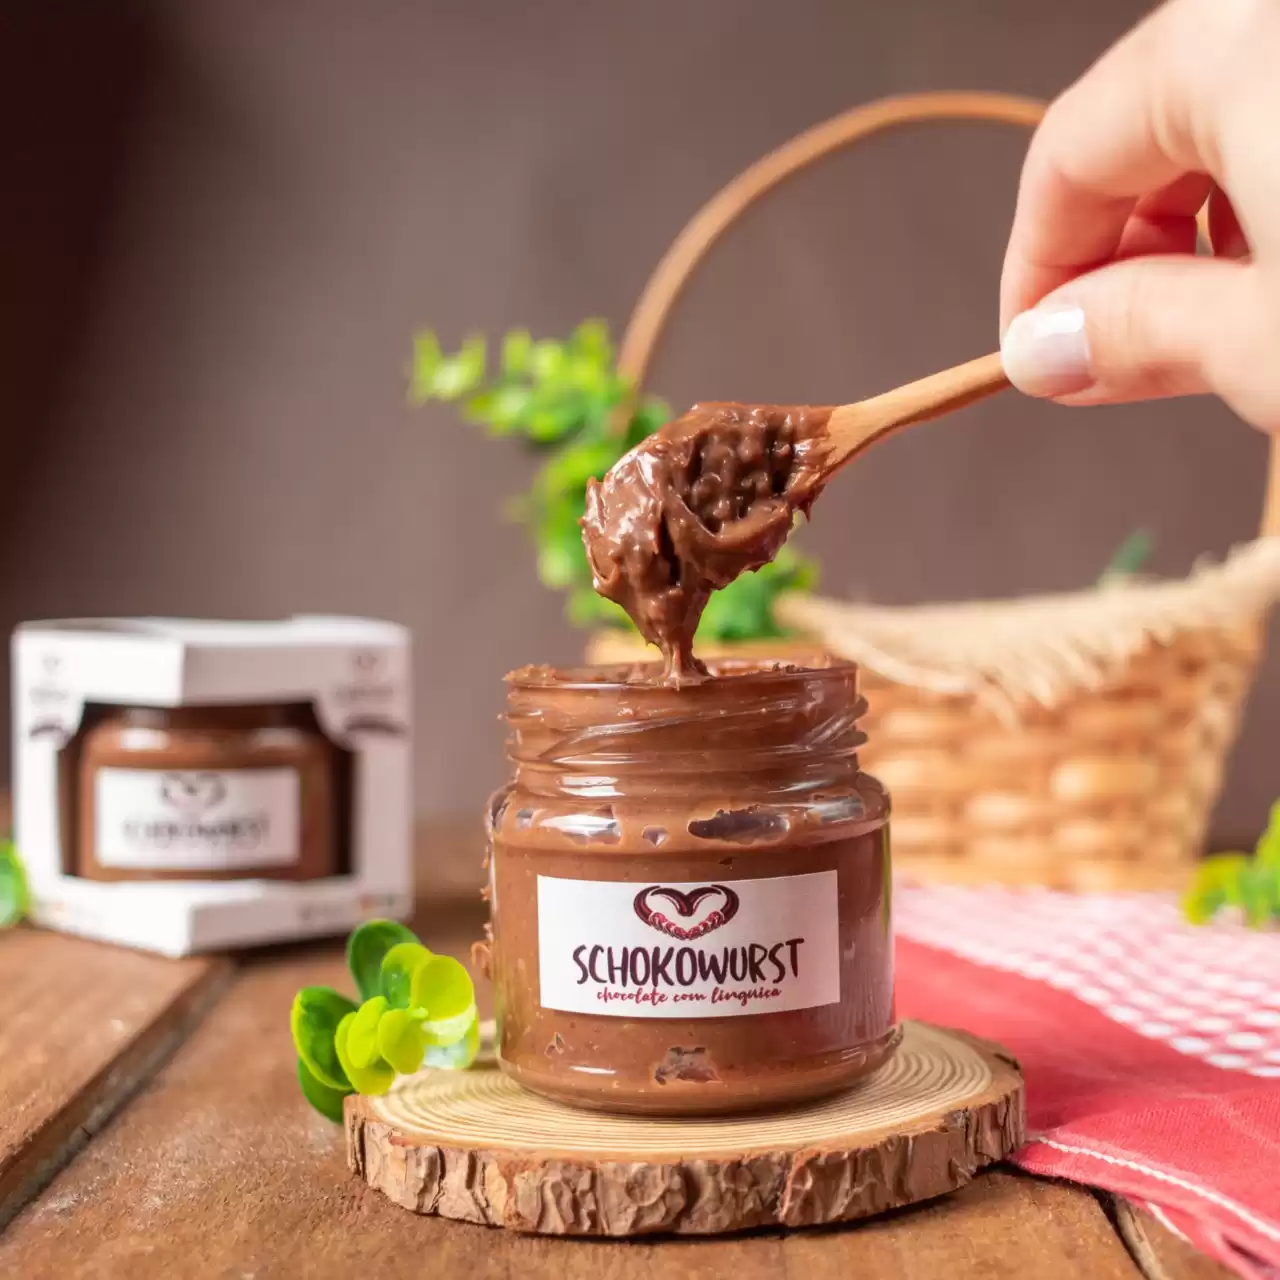 Conheça o Schokowurst, 1º chocolate com linguiça do mundo